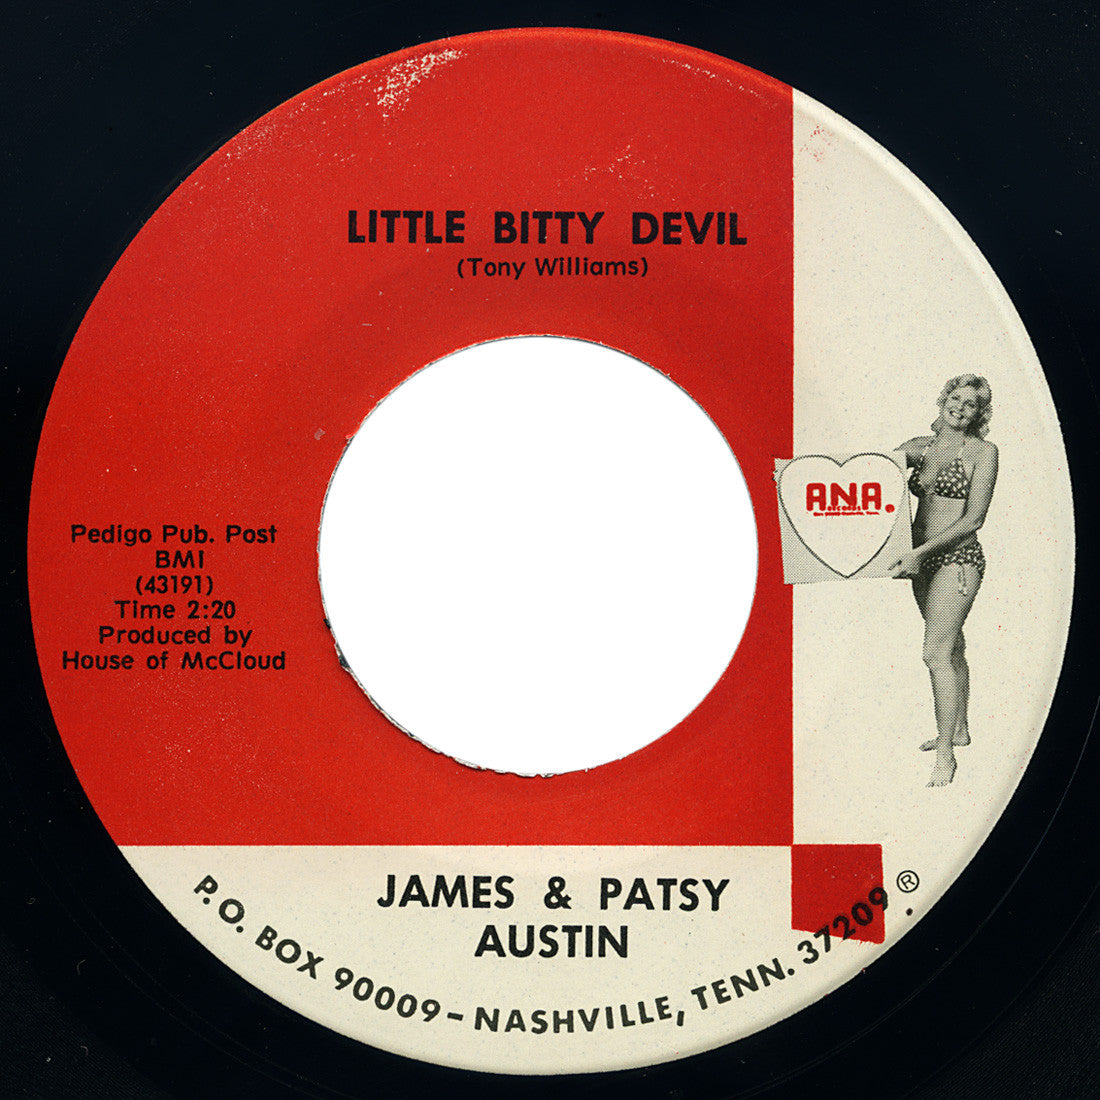 James & Patsy Austin – Little Bitty Devil – ANA